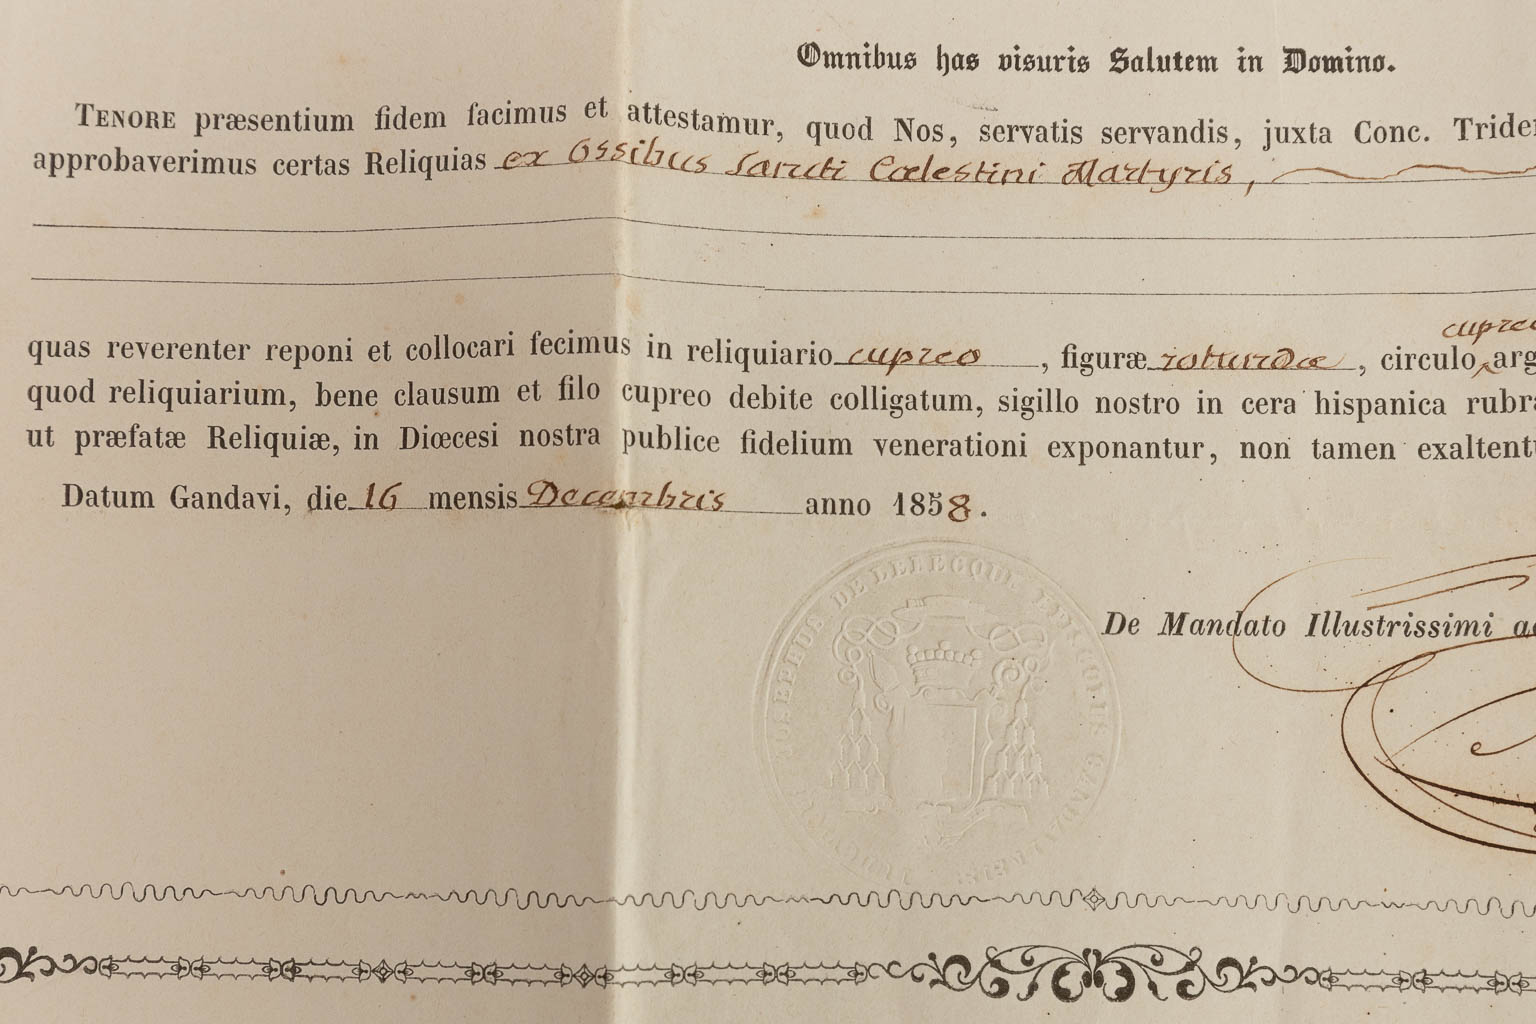 Een verzegelde Theca met relikwie: Ex Ossibus Sancti Caelestini Martyris